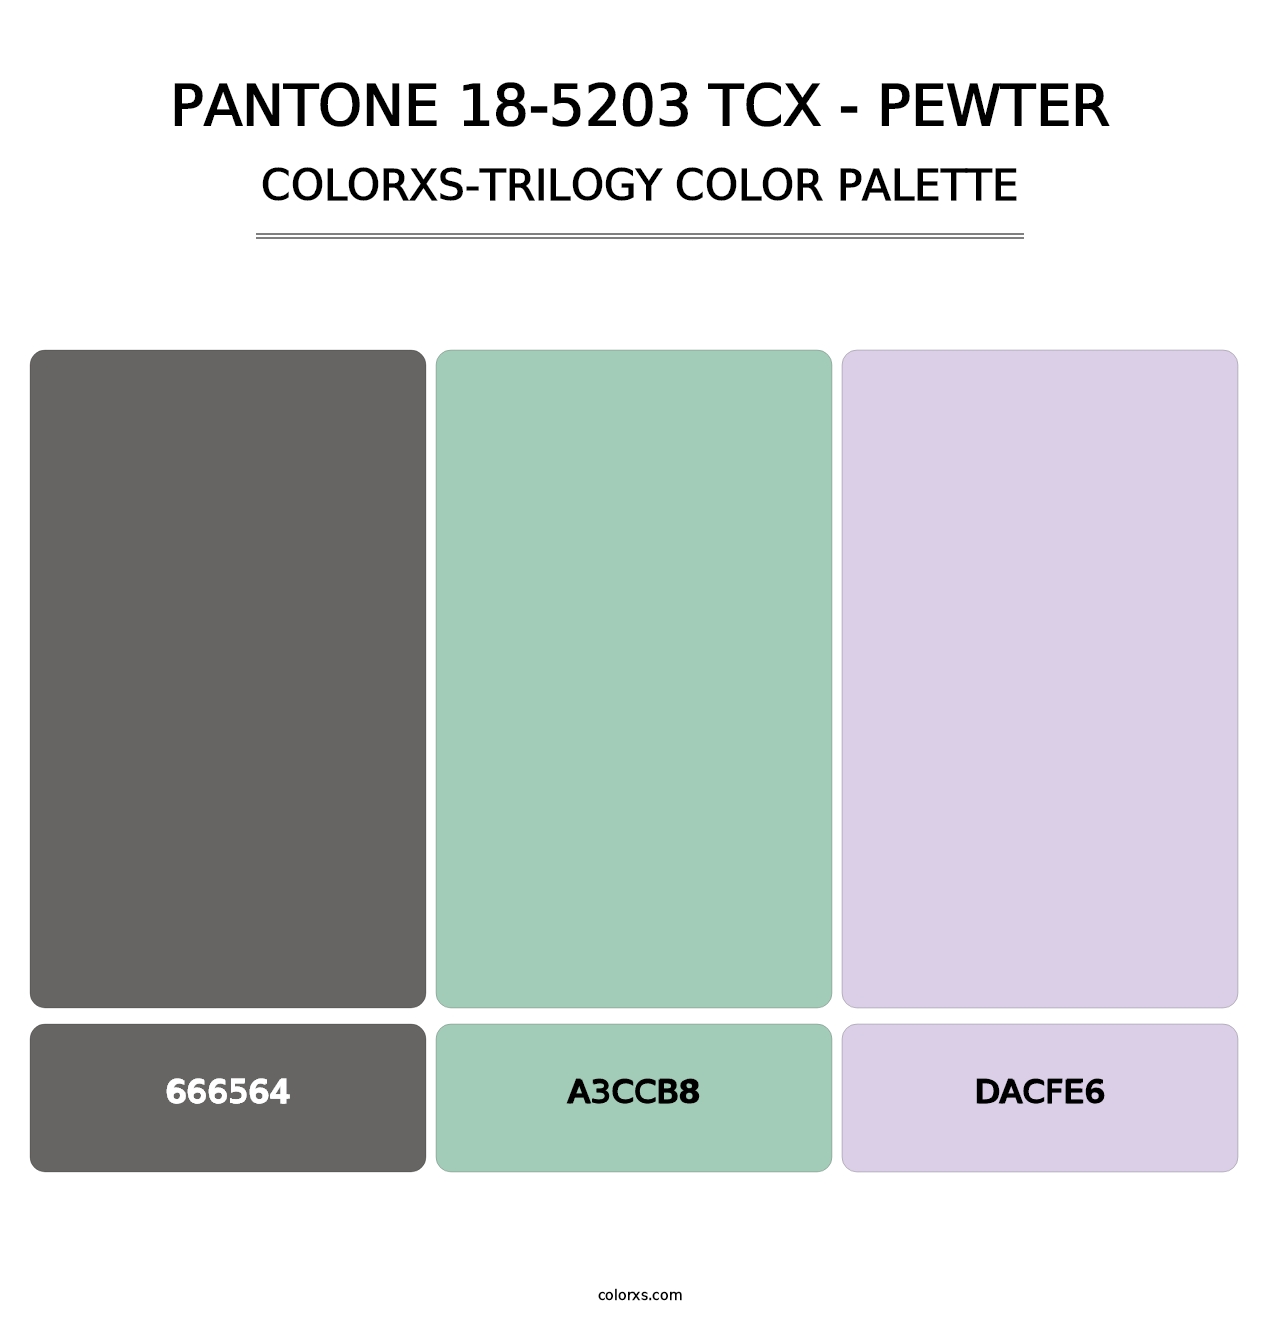 PANTONE 18-5203 TCX - Pewter - Colorxs Trilogy Palette